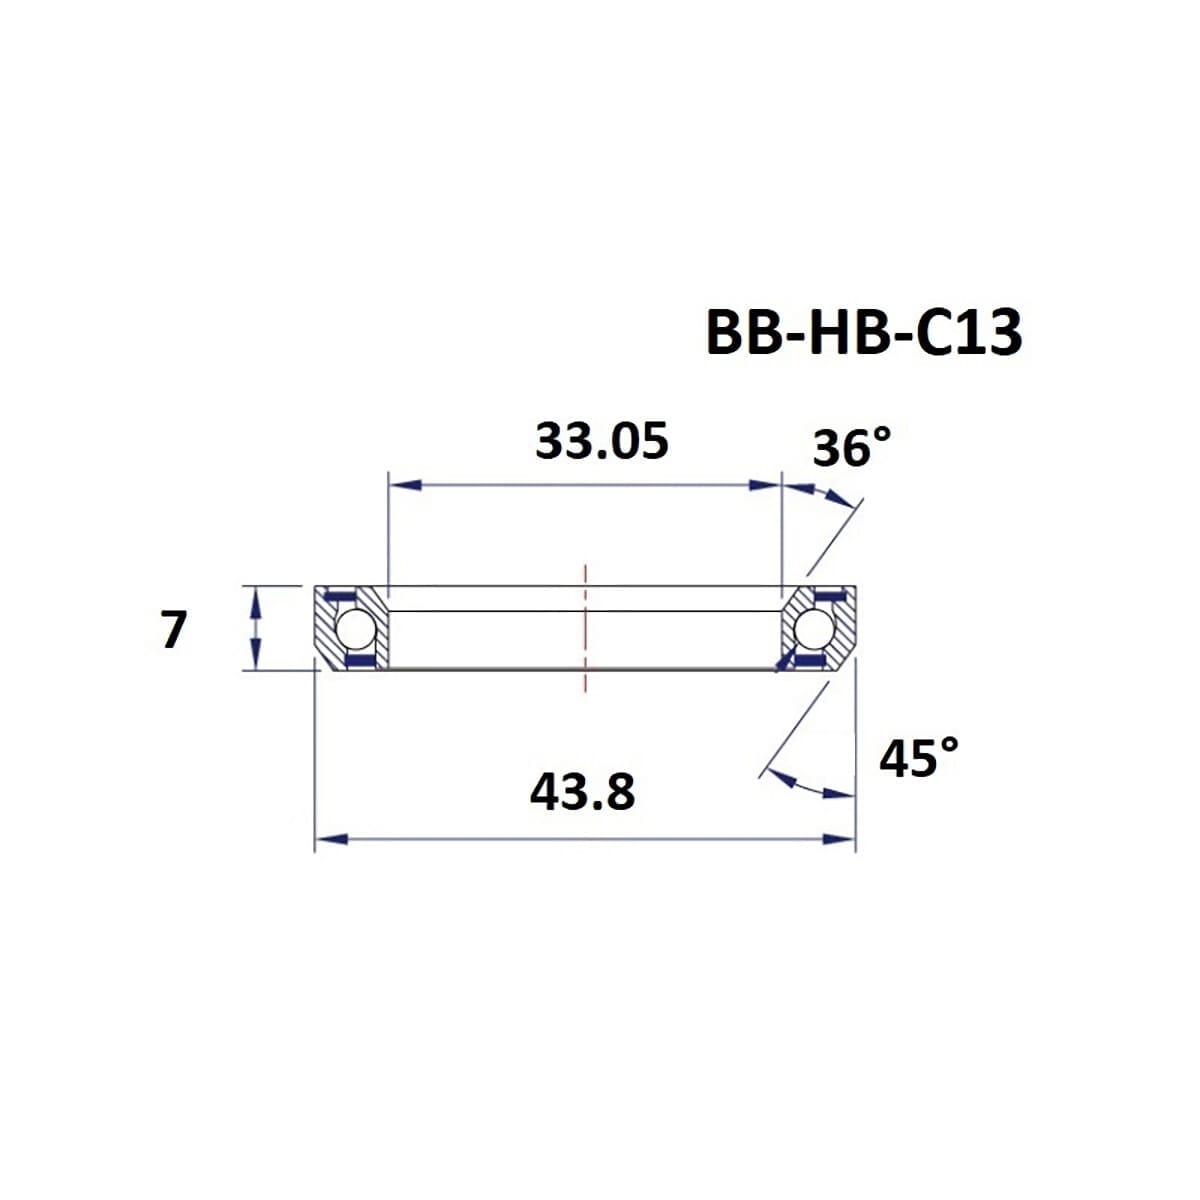 Roulement de Direction BLACK BEARING C13 36/45° (33,05 x 43,8 x 7 mm)